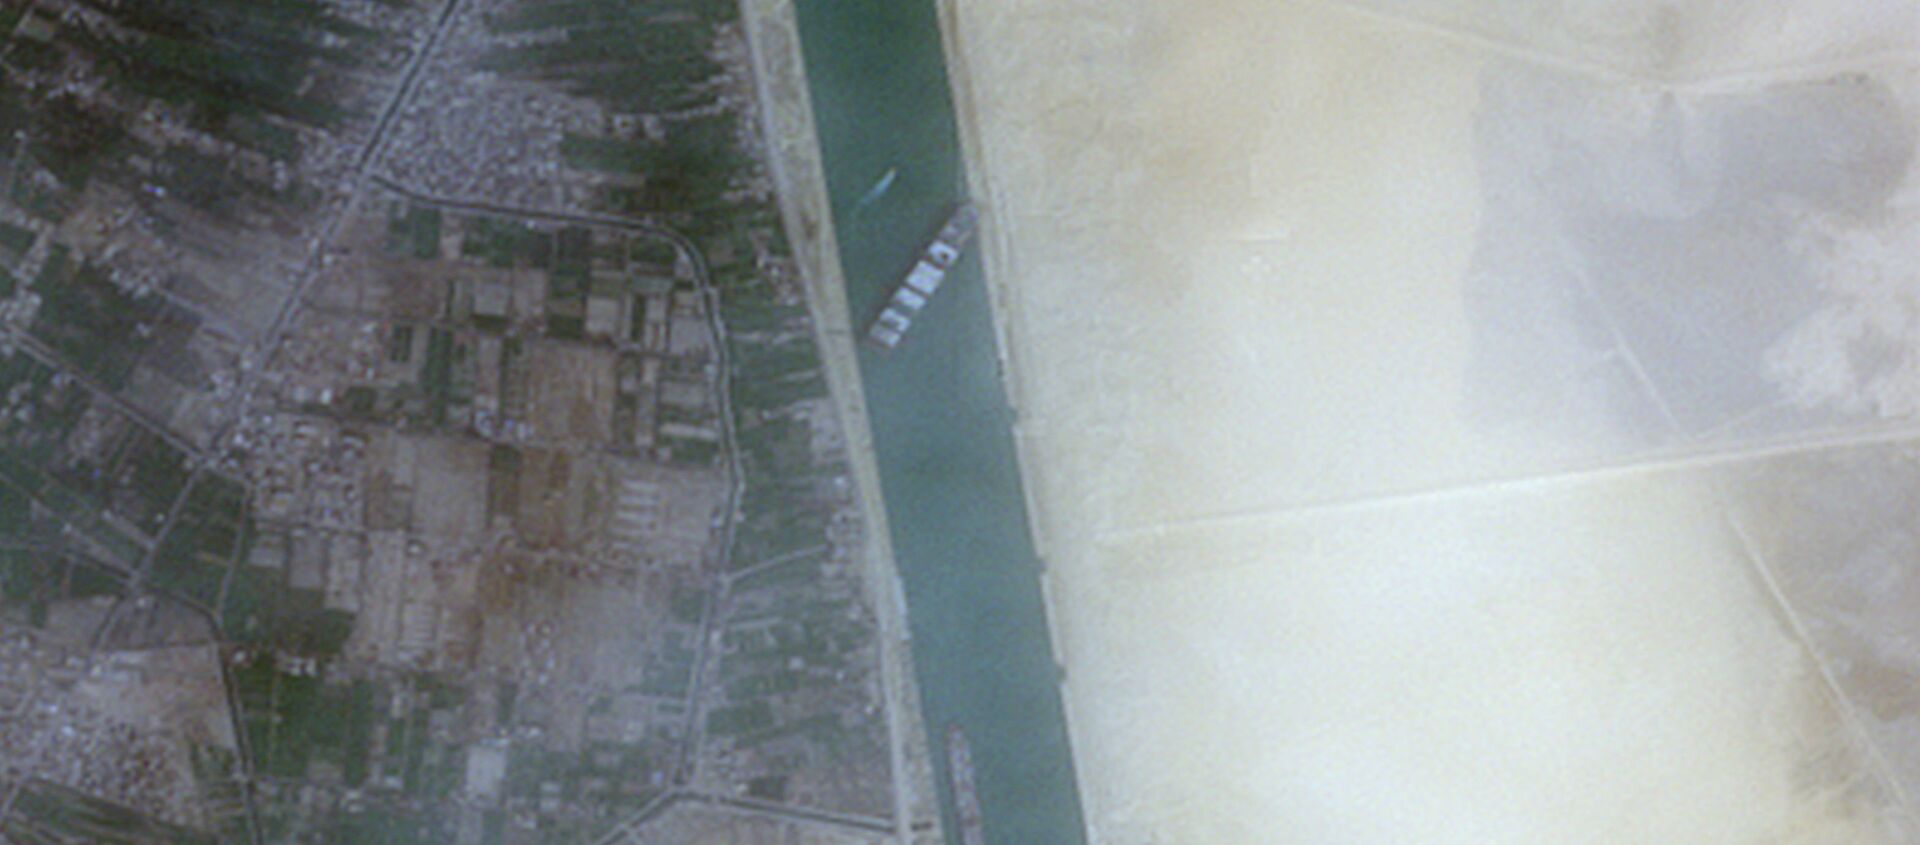  السفينة العملاقة إيفر جيفن في الممر الملاحي الأهم في العالم قناة السويس، مصر 24 مارس 2021 - سبوتنيك عربي, 1920, 26.03.2021